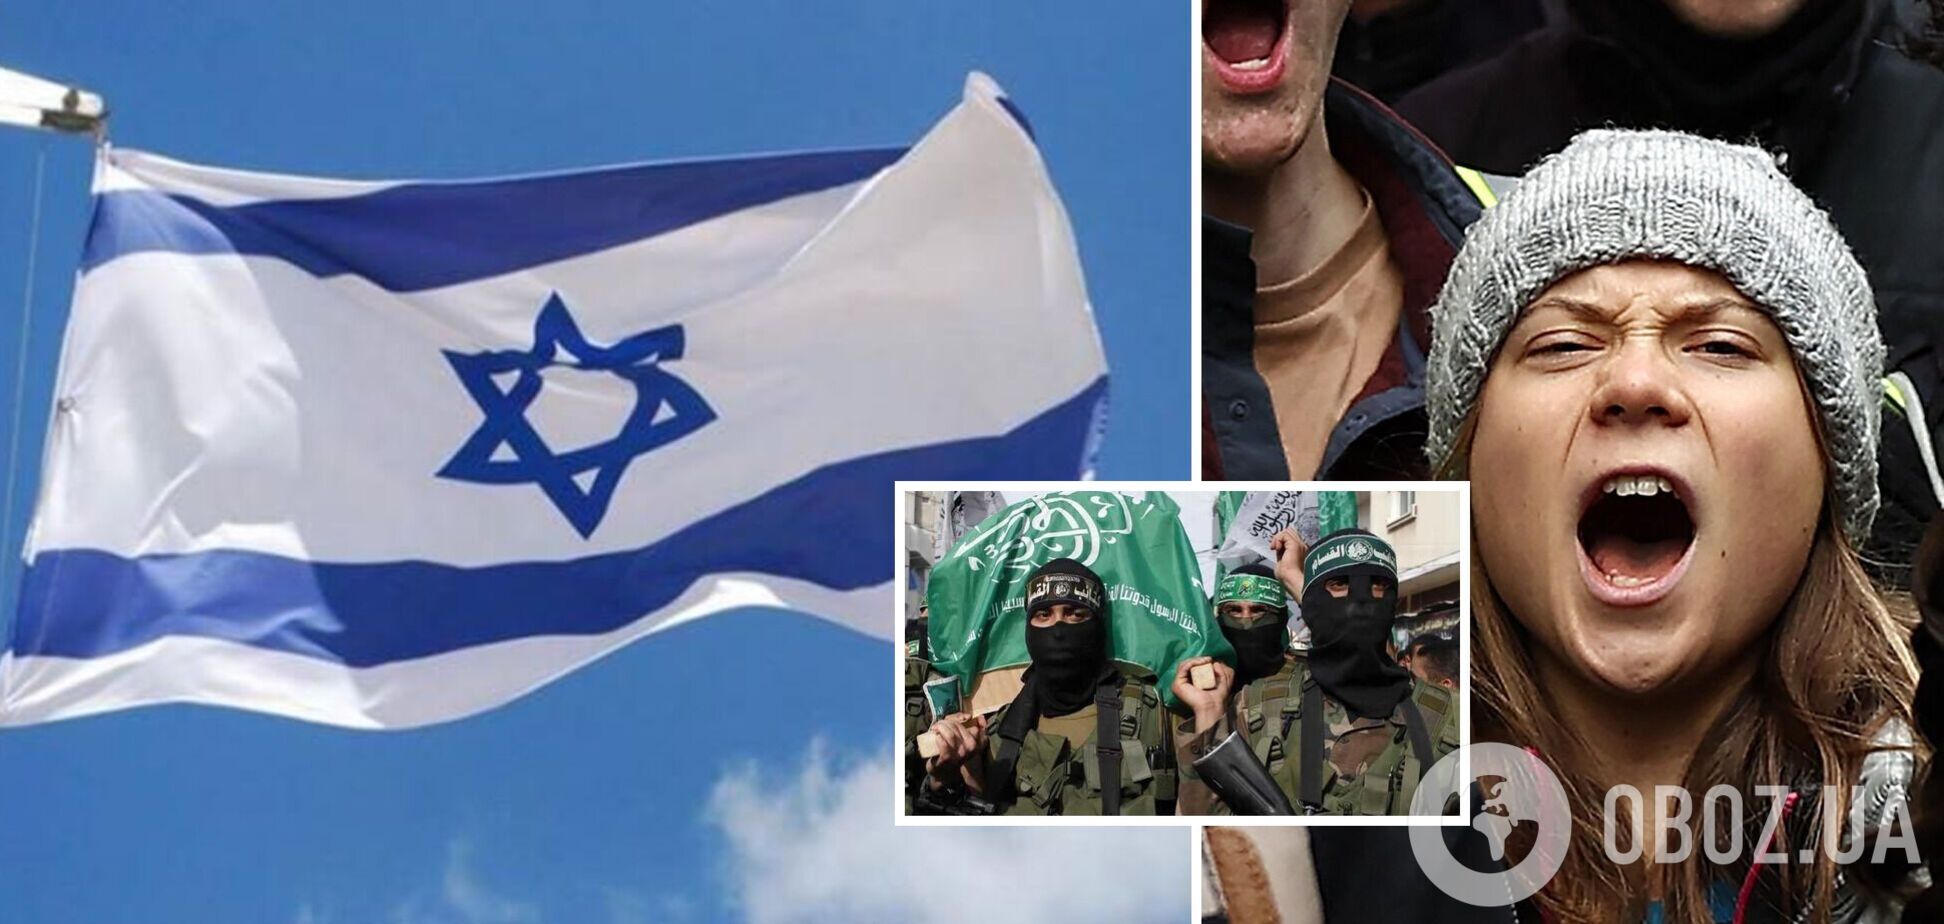 'Прихильники Грети є прихильниками тероризму': в Ізраїлі жорстко відреагували на підтримку екоактивісткою Палестини й Гази